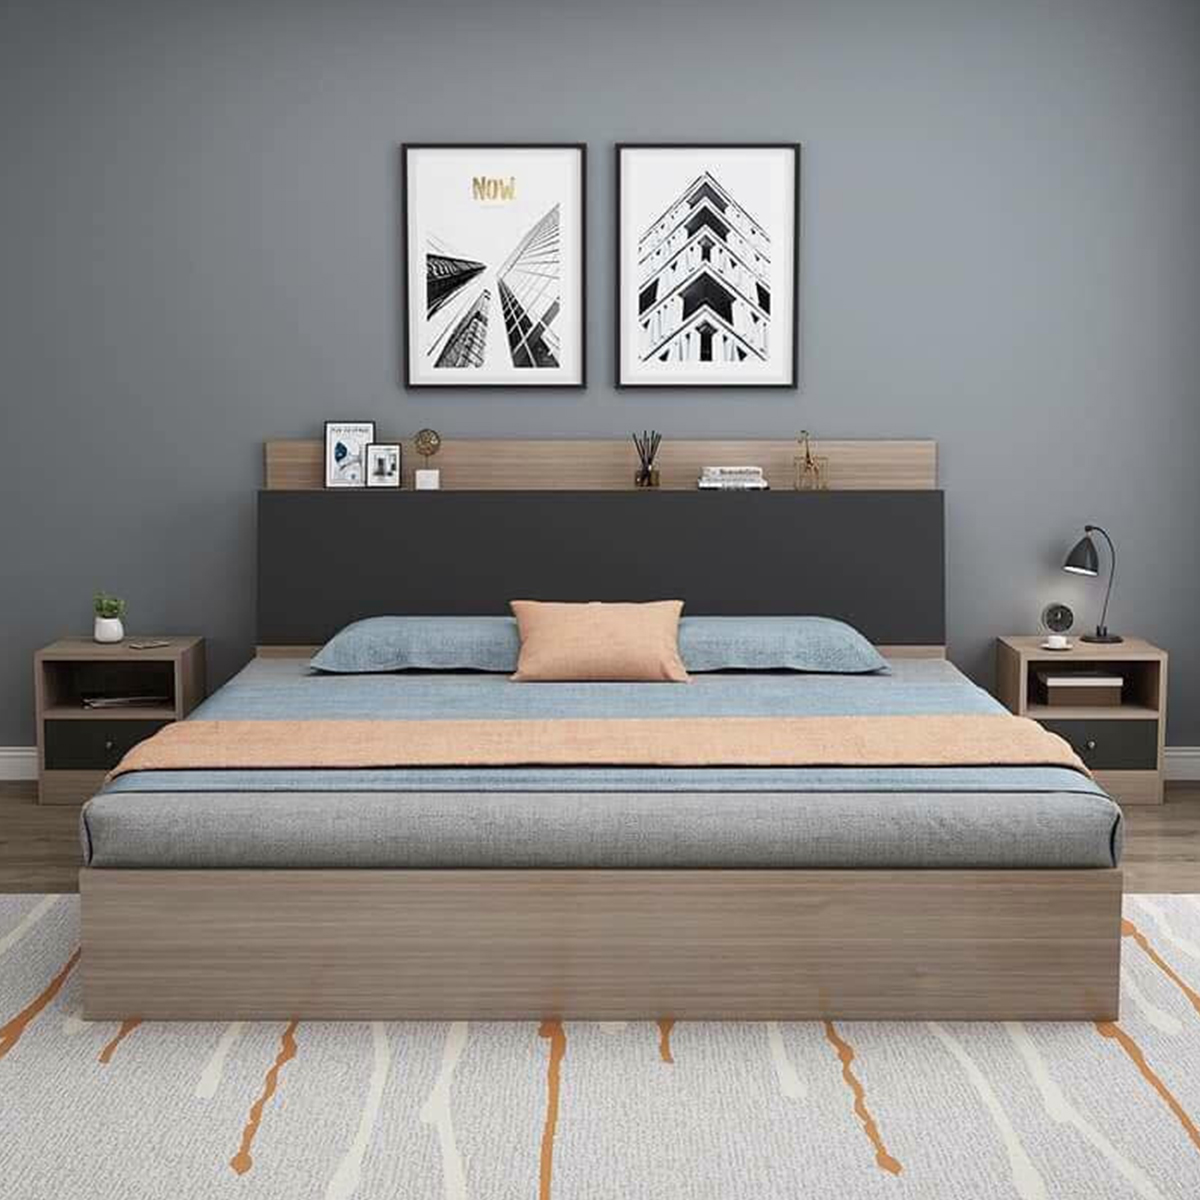 Mẫu giường hộp gỗ công nghiệp với thiết kế đơn giản